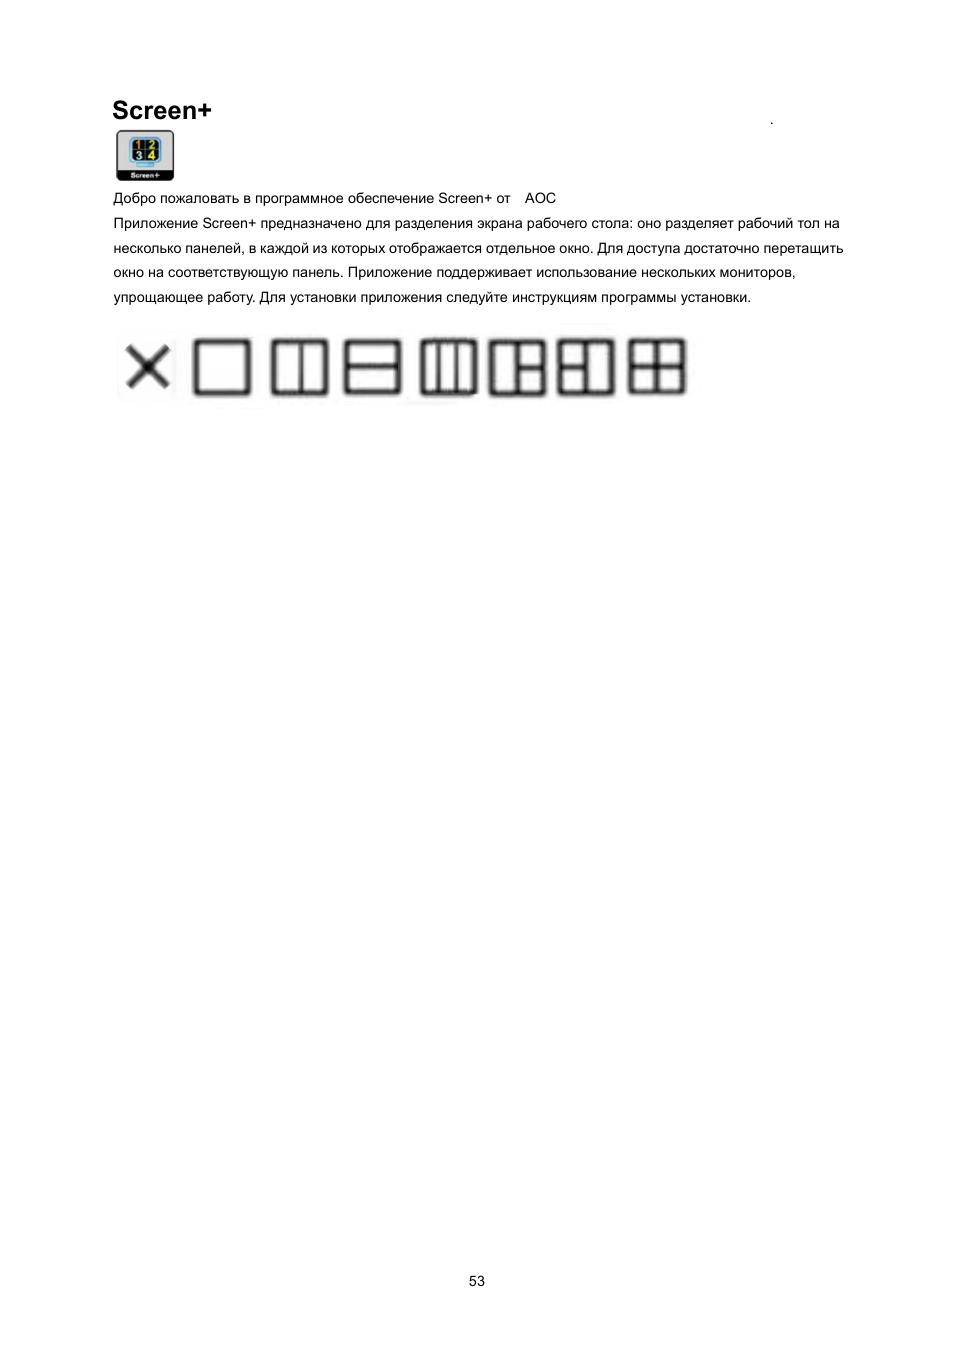 Screen, I-menu, Windows 2000 | Инструкция по эксплуатации AOC I2367FM | Страница 53 / 62